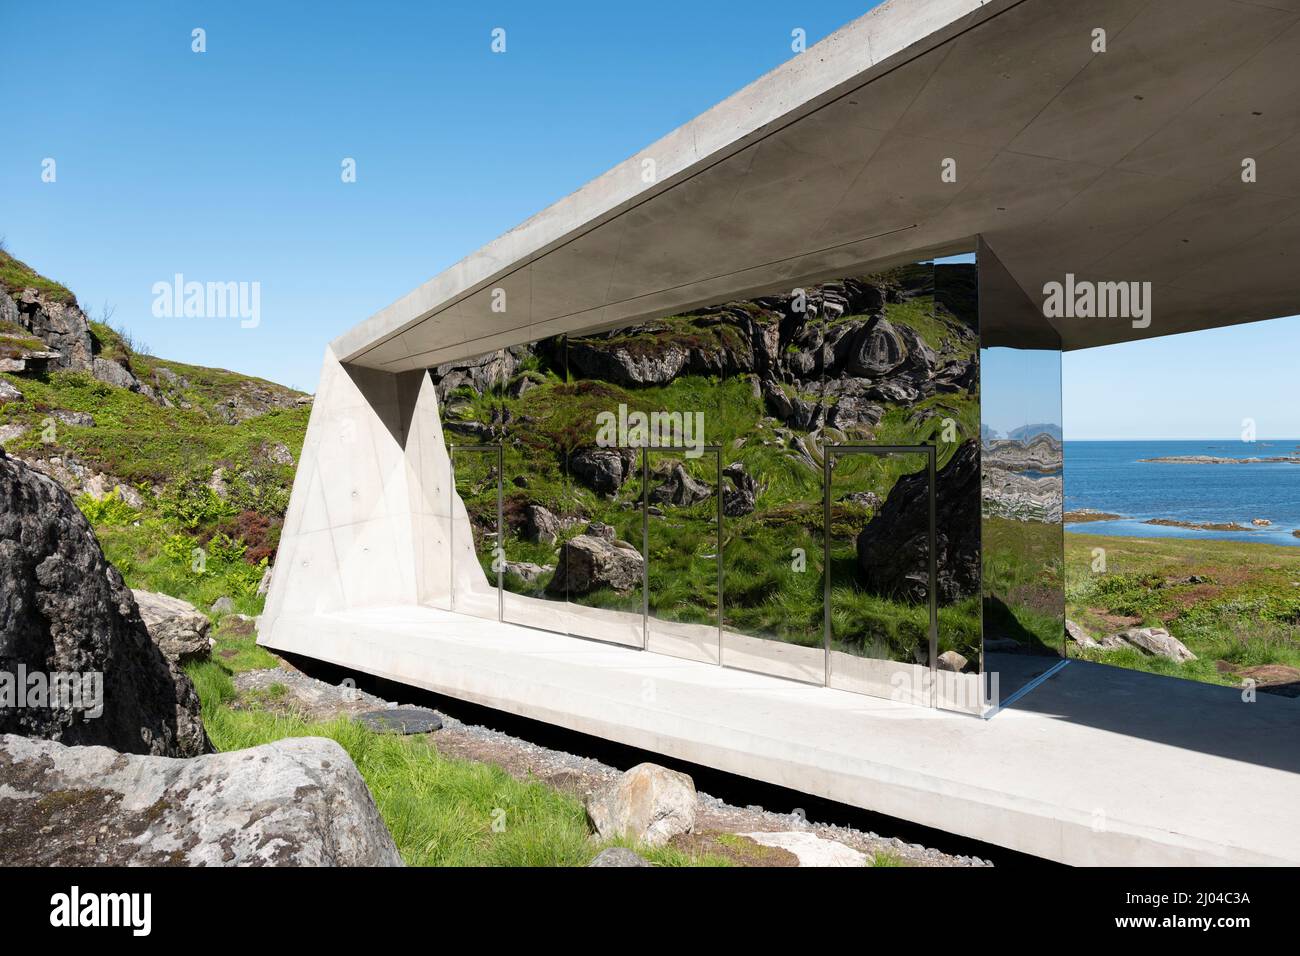 Bukkekjerka aire de repos, la Route panoramique de la Norvège, d'Andøya, Norvège Vesteralen conçu par l'architecte Morfeus Arkitekter. Banque D'Images